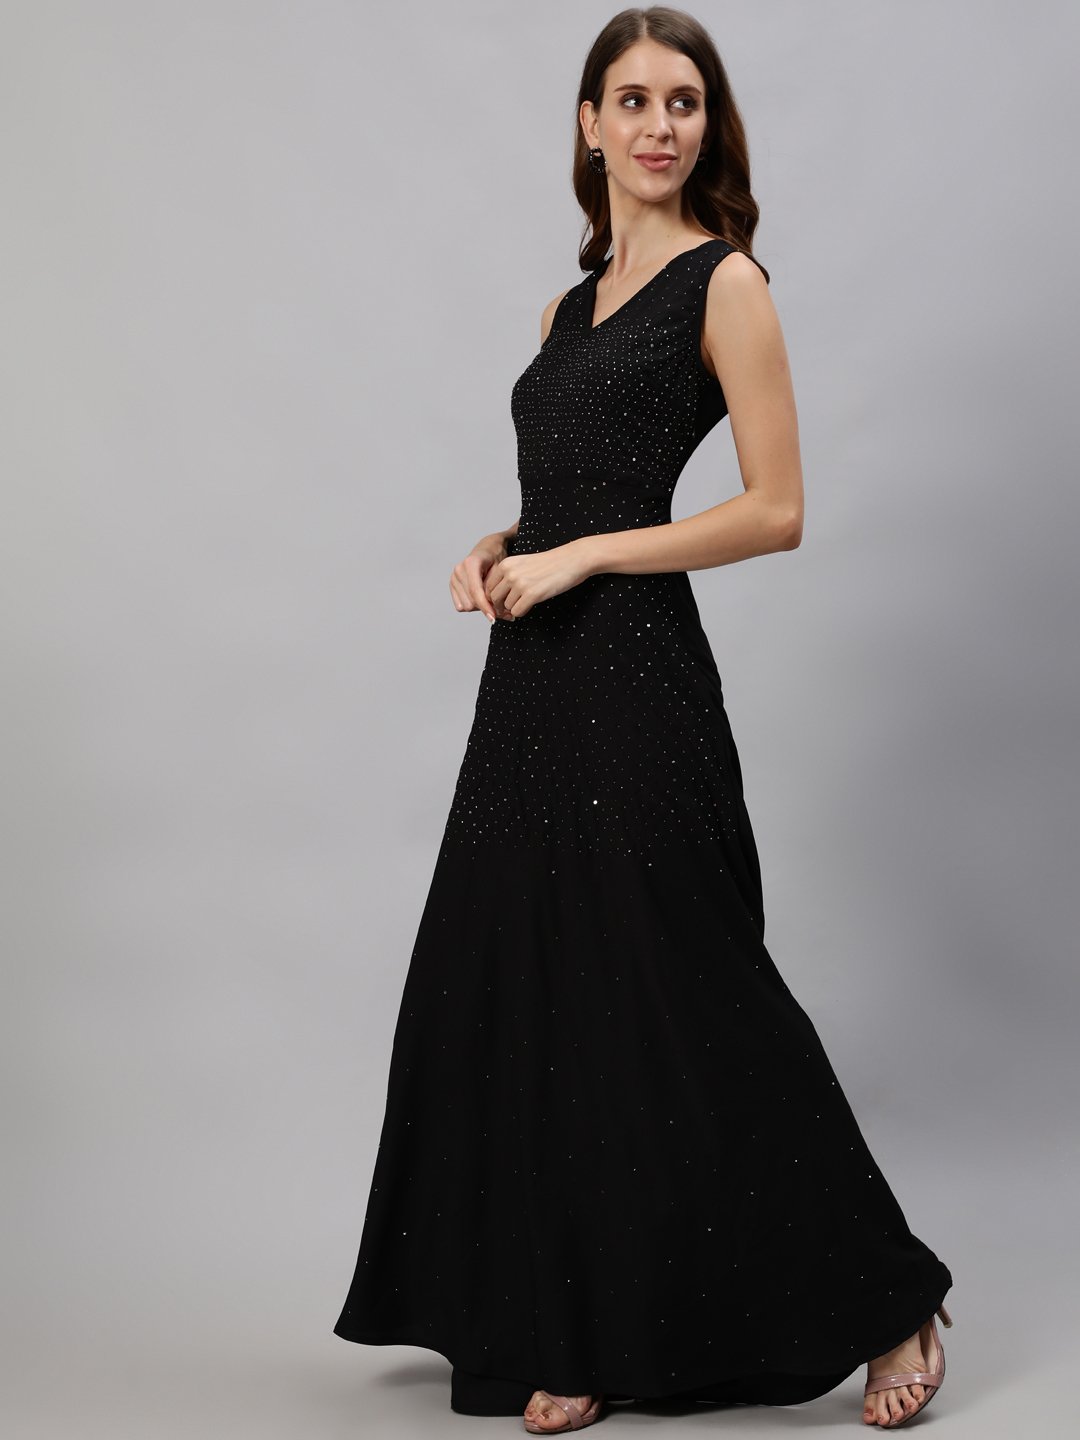 Ishin Women's Black Embellished Gown Dress